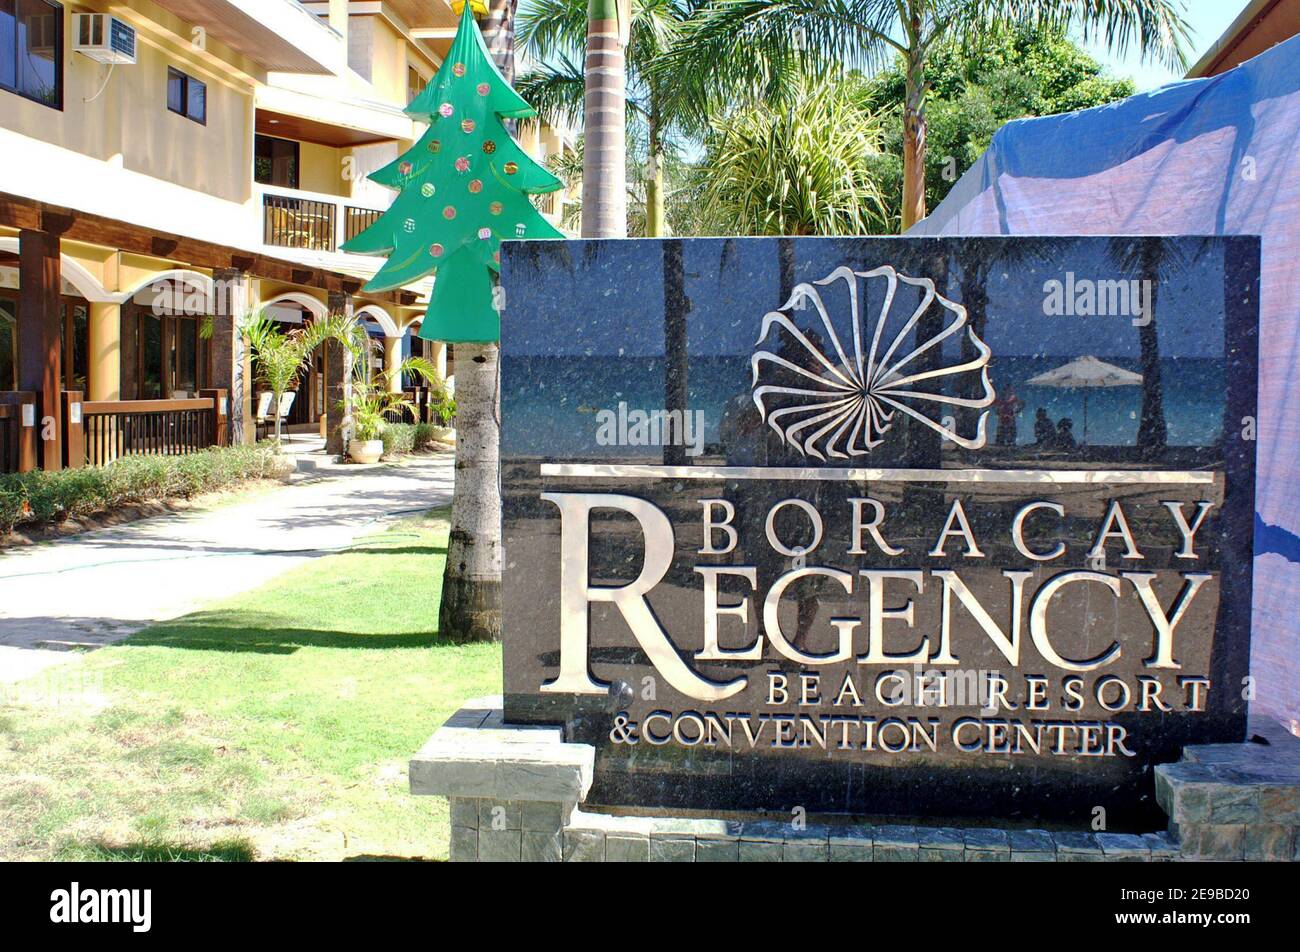 Il Boracay Regency Beach Resort and Convention Center, situato su White Beach nelle Filippine, è stato il più grande resort dell'isola nel 2005. I massicci sviluppi hanno contribuito alla necessità di gestire in modo più sostenibile il turismo su questa isola di villeggiatura. Entro il 2017 l'isola ha attratto oltre 2 milioni di visitatori annui che hanno contribuito alla sua chiusura nell'aprile 2018 da parte del governo. L'intera isola è stata chiusa per la riabilitazione e il risanamento per sei mesi e poi ha seguito un'apertura graduale più sostenibile negli anni successivi. Foto Stock